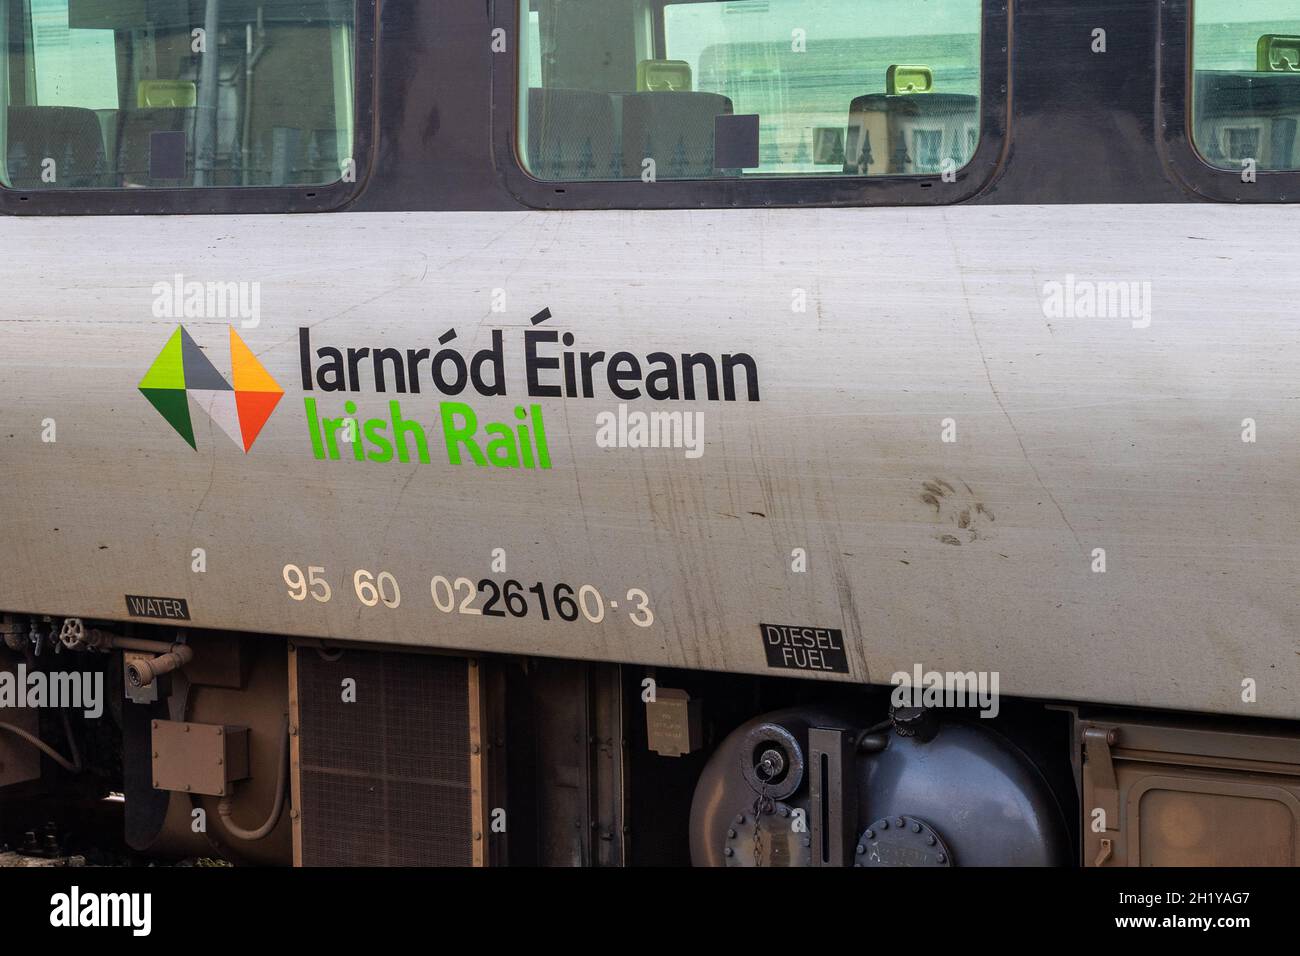 Iarnród Éireann/Irish Rail logo on the side of a carriage. Stock Photo